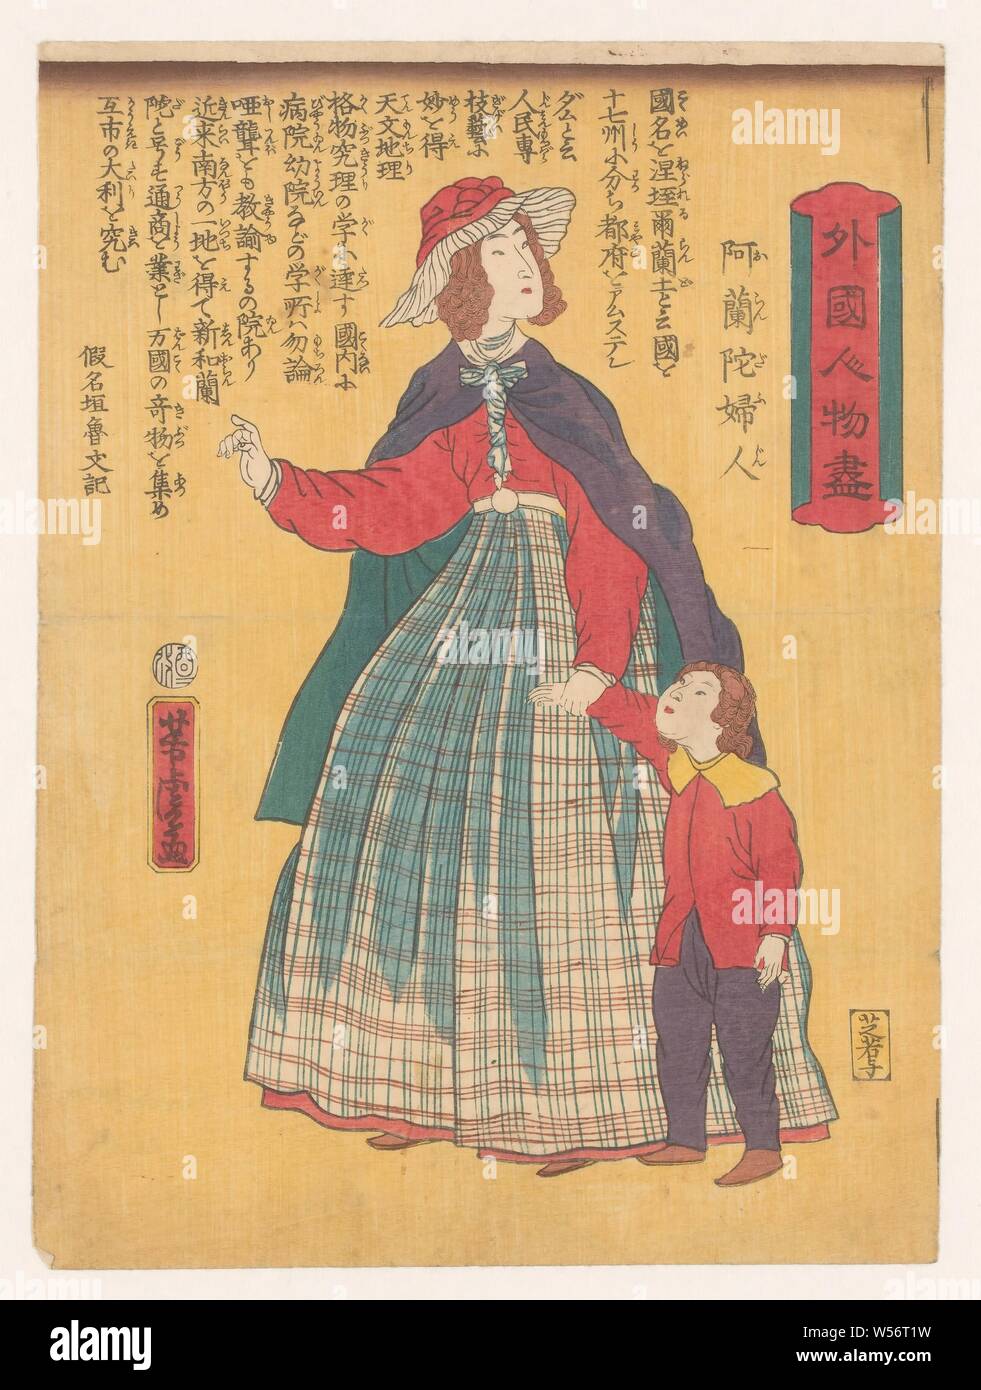 Mujer holandesa con el niño Gaikoku jinbutsuga - Oranda fujin (título de objeto), una mujer holandesa en una amplia falda a cuadros y una blusa roja, capa y sombrero, un niño sobre su izquierda, probablemente su hijo, su mano derecha ligeramente levantada, mira a la derecha. El texto en caracteres japoneses fue escrito por el escritor satírico () / periodista Kanagaki Robun (1829-1894): "El nombre del país es el de los Países Bajos. La tierra está dividida en 17 provincias y su capital es Amsterdam. Las personas son buenas en arte y tecnología, y la ciencia se entiende muy bien allí. Hay hospitales y escuelas en curso Foto de stock